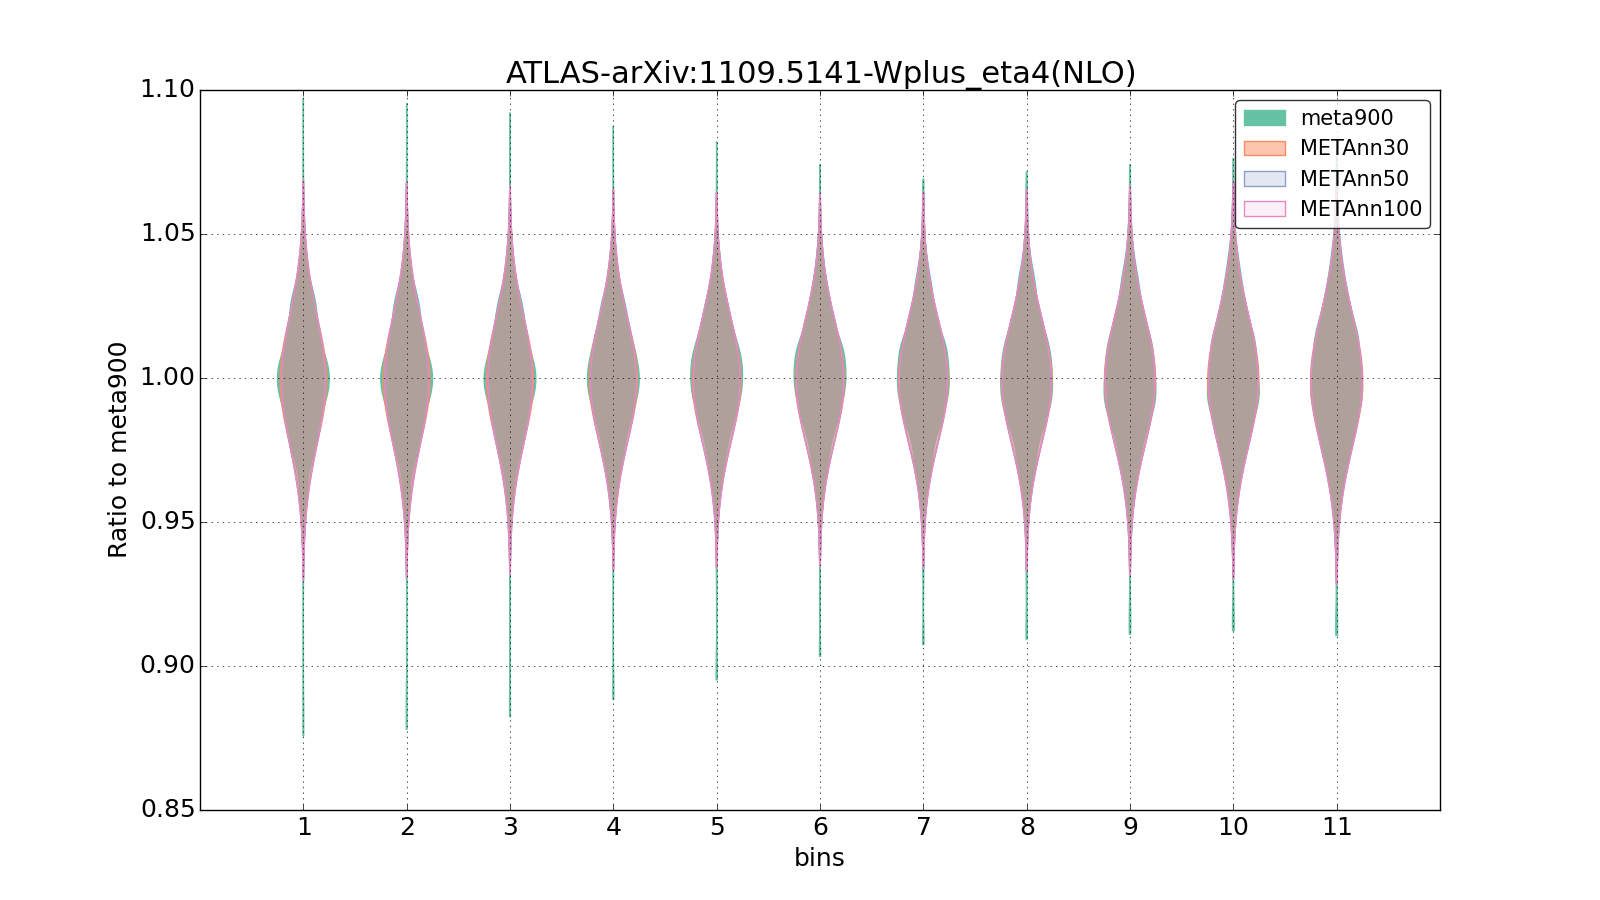 figure plots/meta_ann_pheno/violinplot_ATLAS-arXiv:11095141-Wplus_eta4(NLO).png